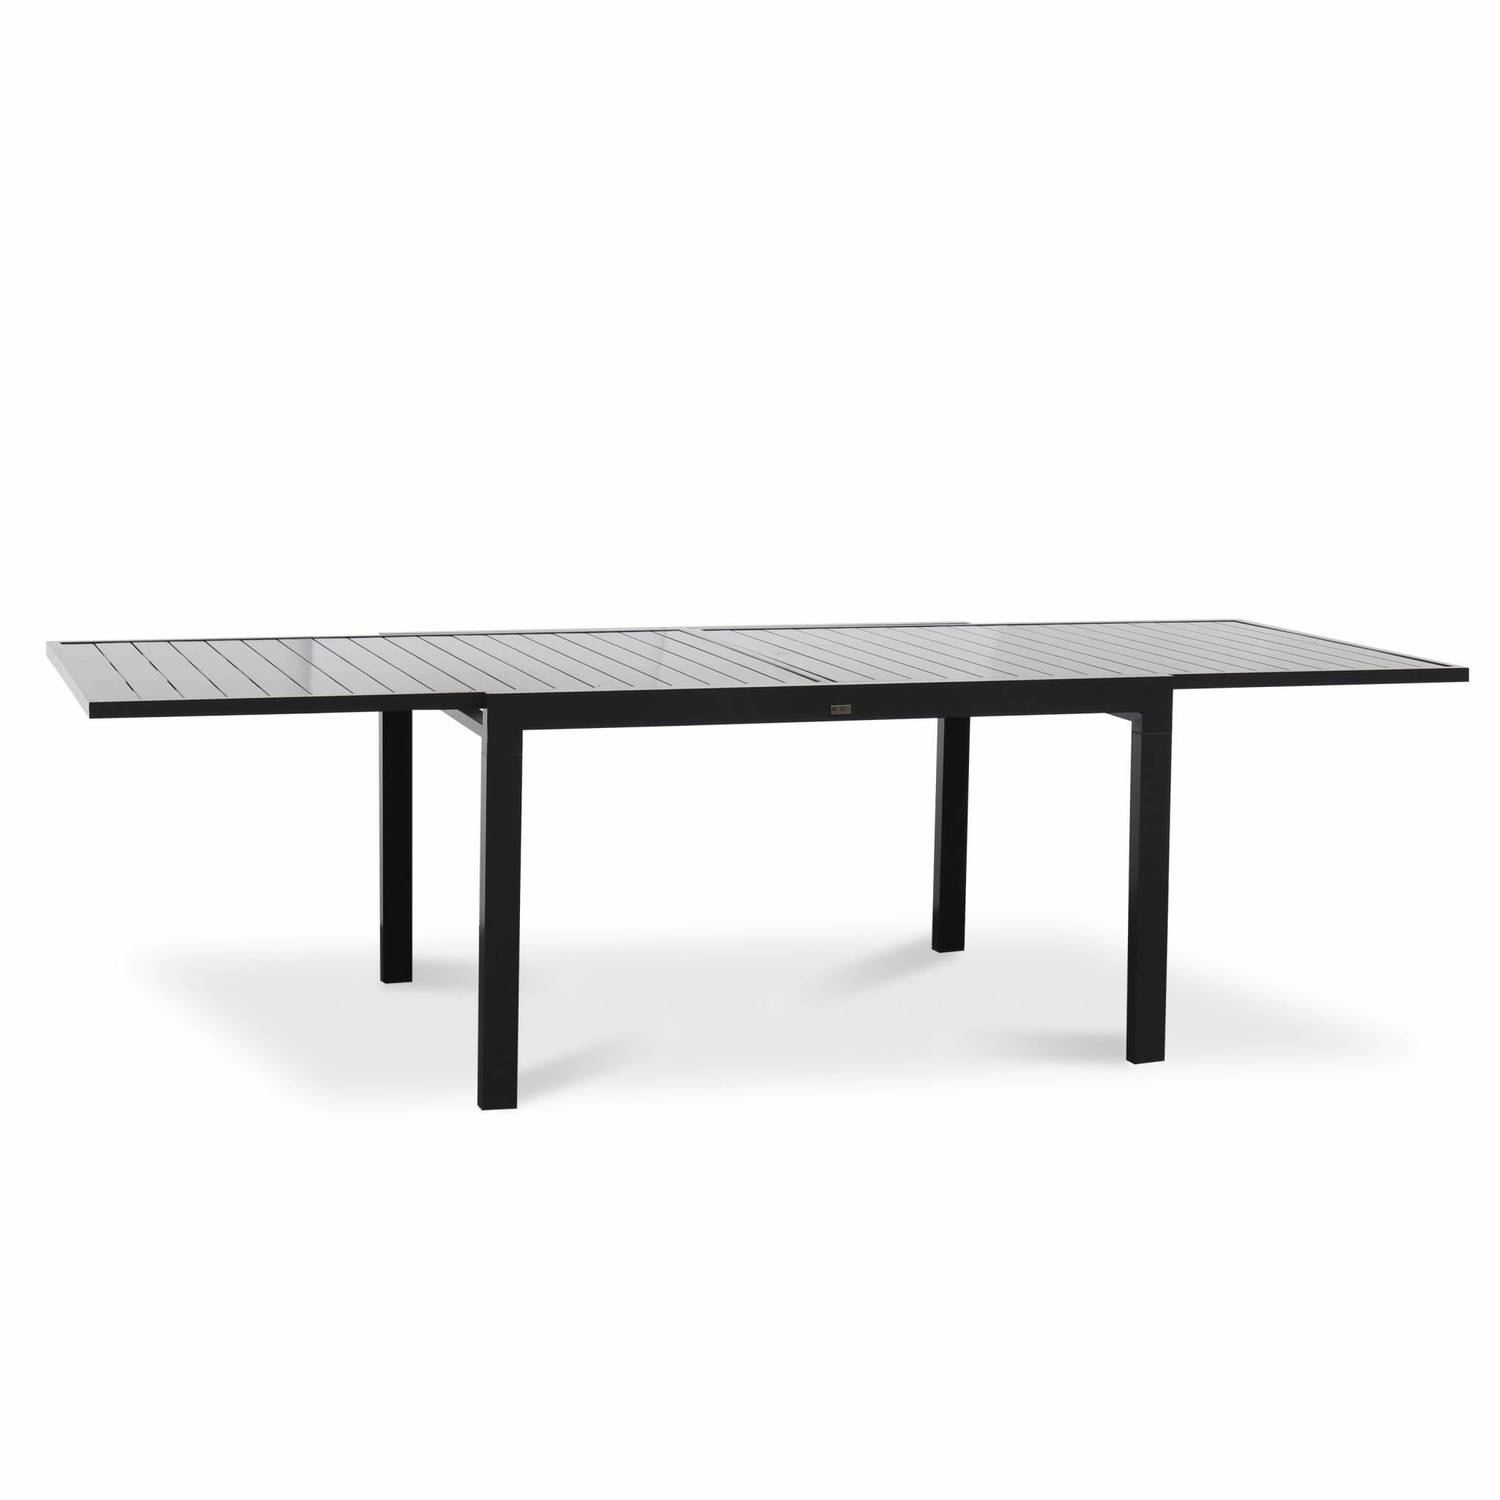 Table de jardin extensible – Boston – Table en aluminium 135/270cm avec rallonges, anthracite Photo3